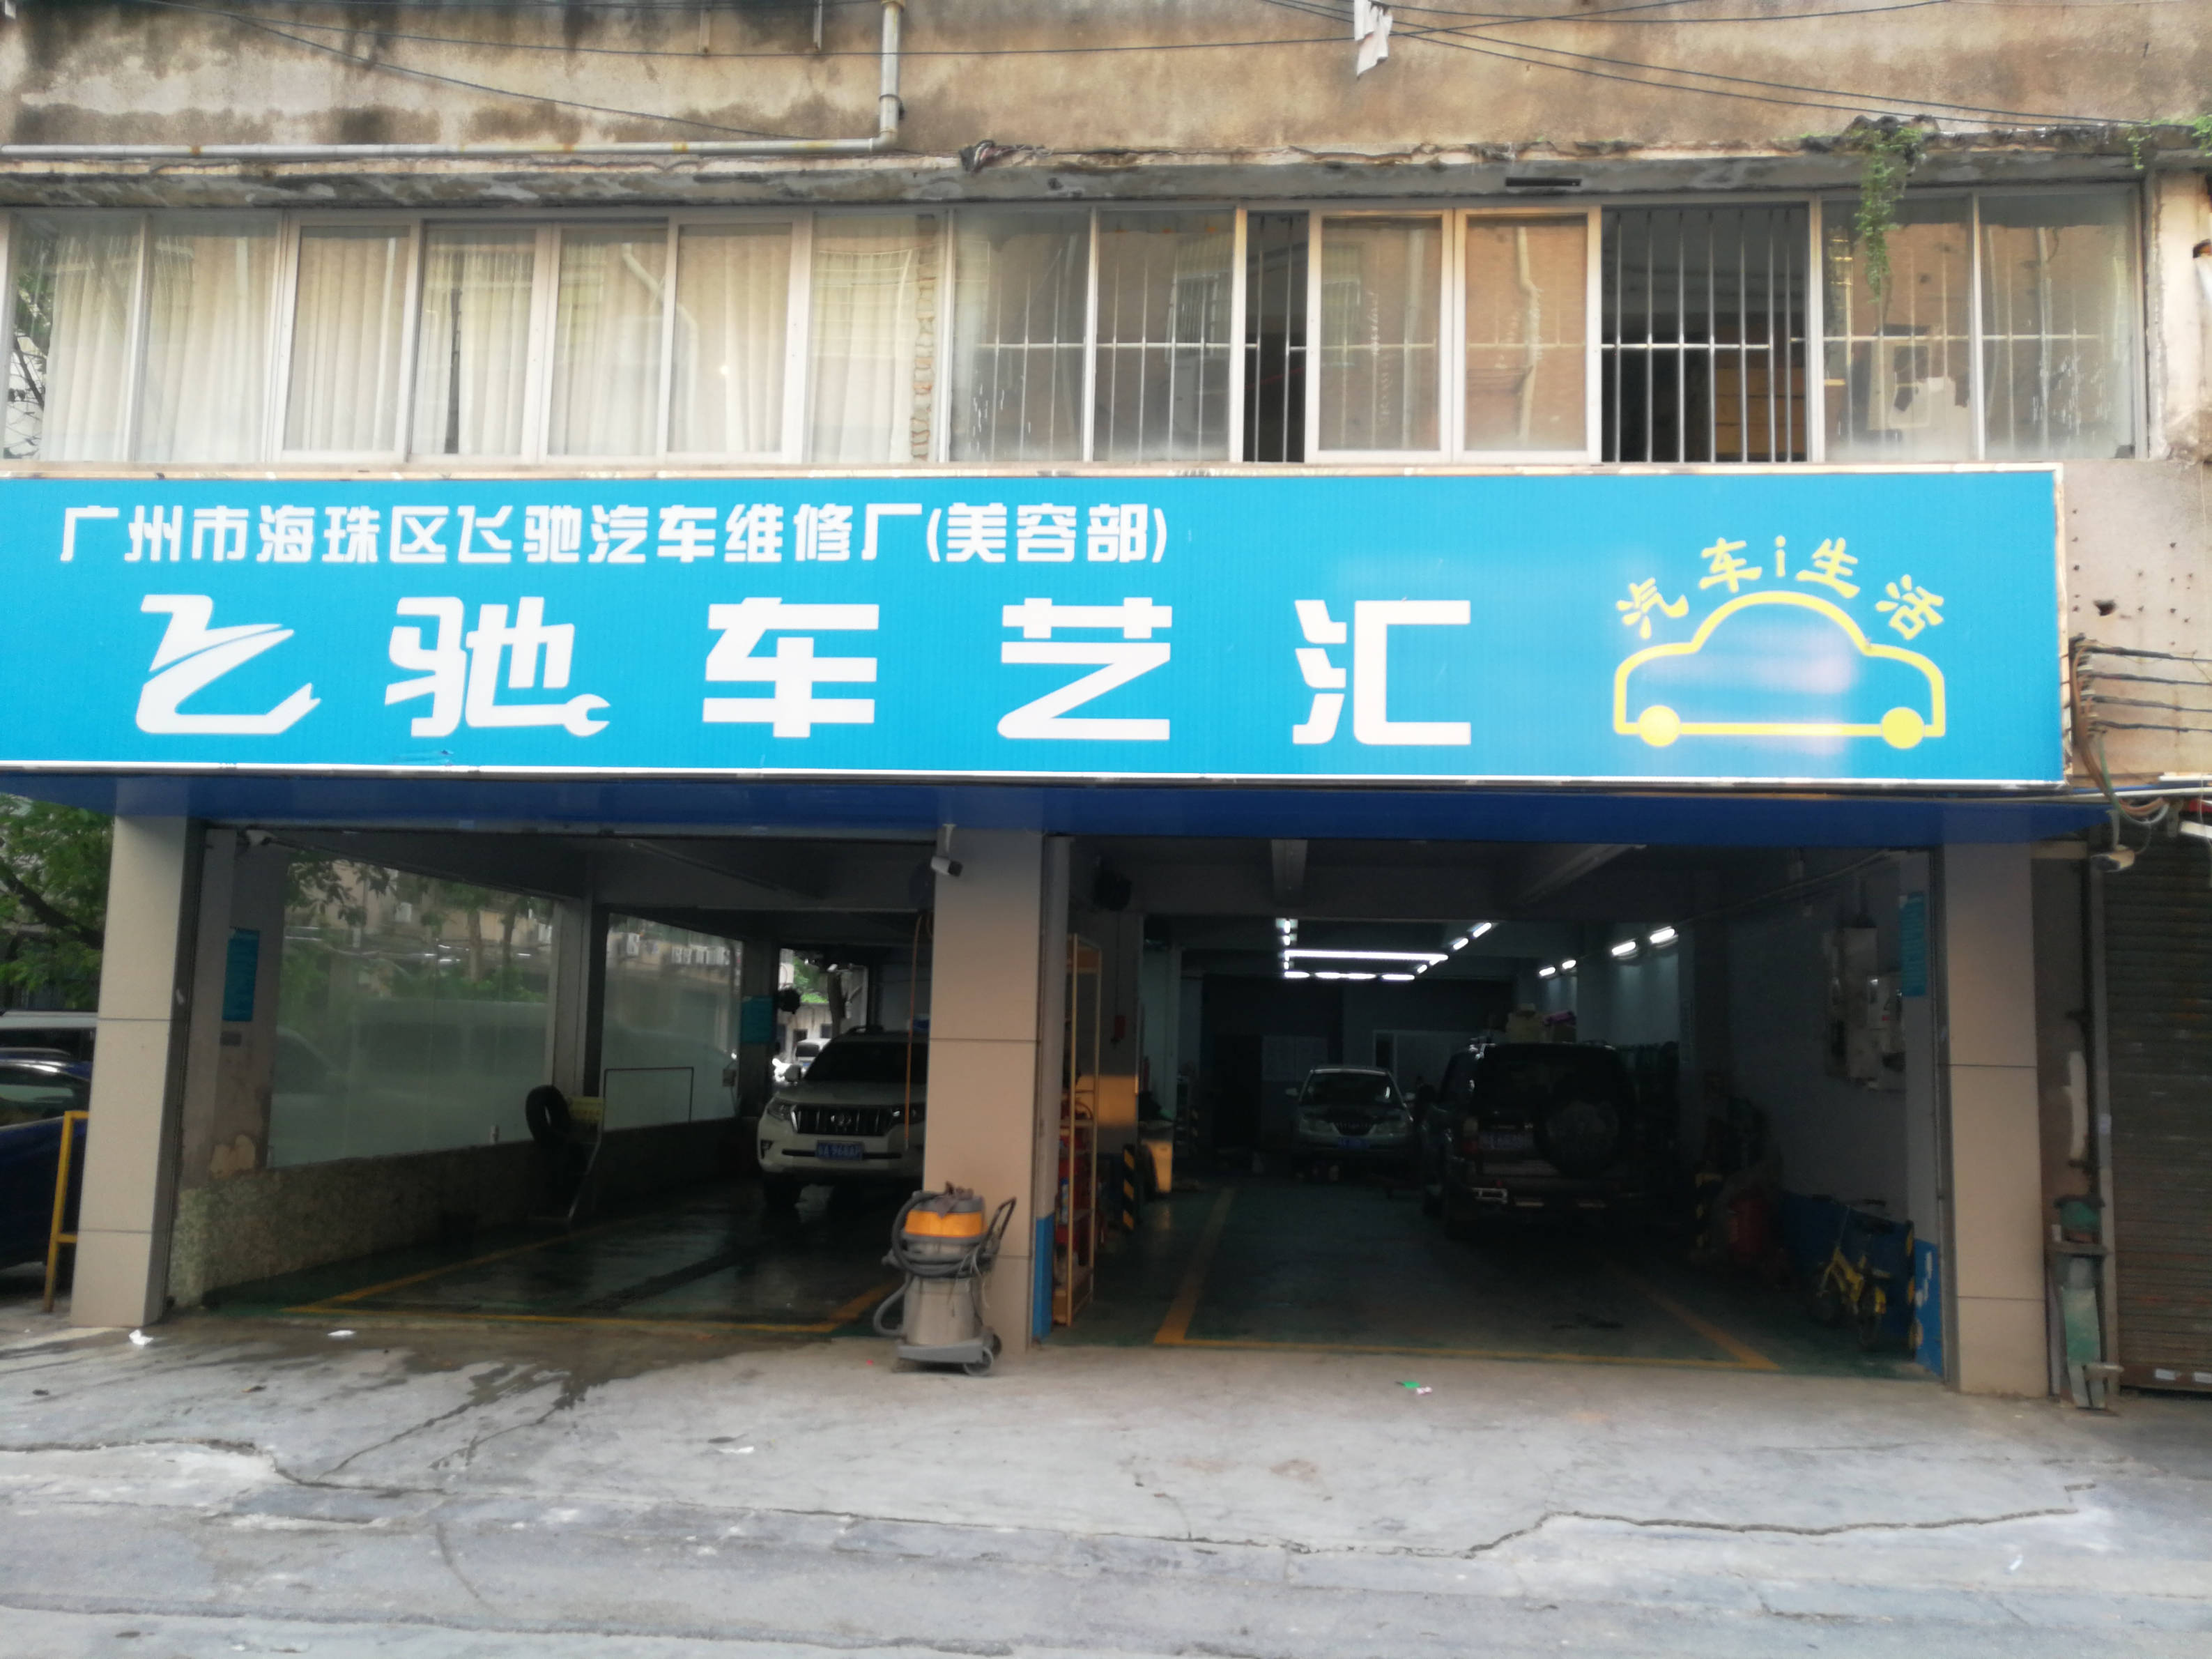 广州市海珠区飞驰汽车维修厂 枫车合作门店 第1张